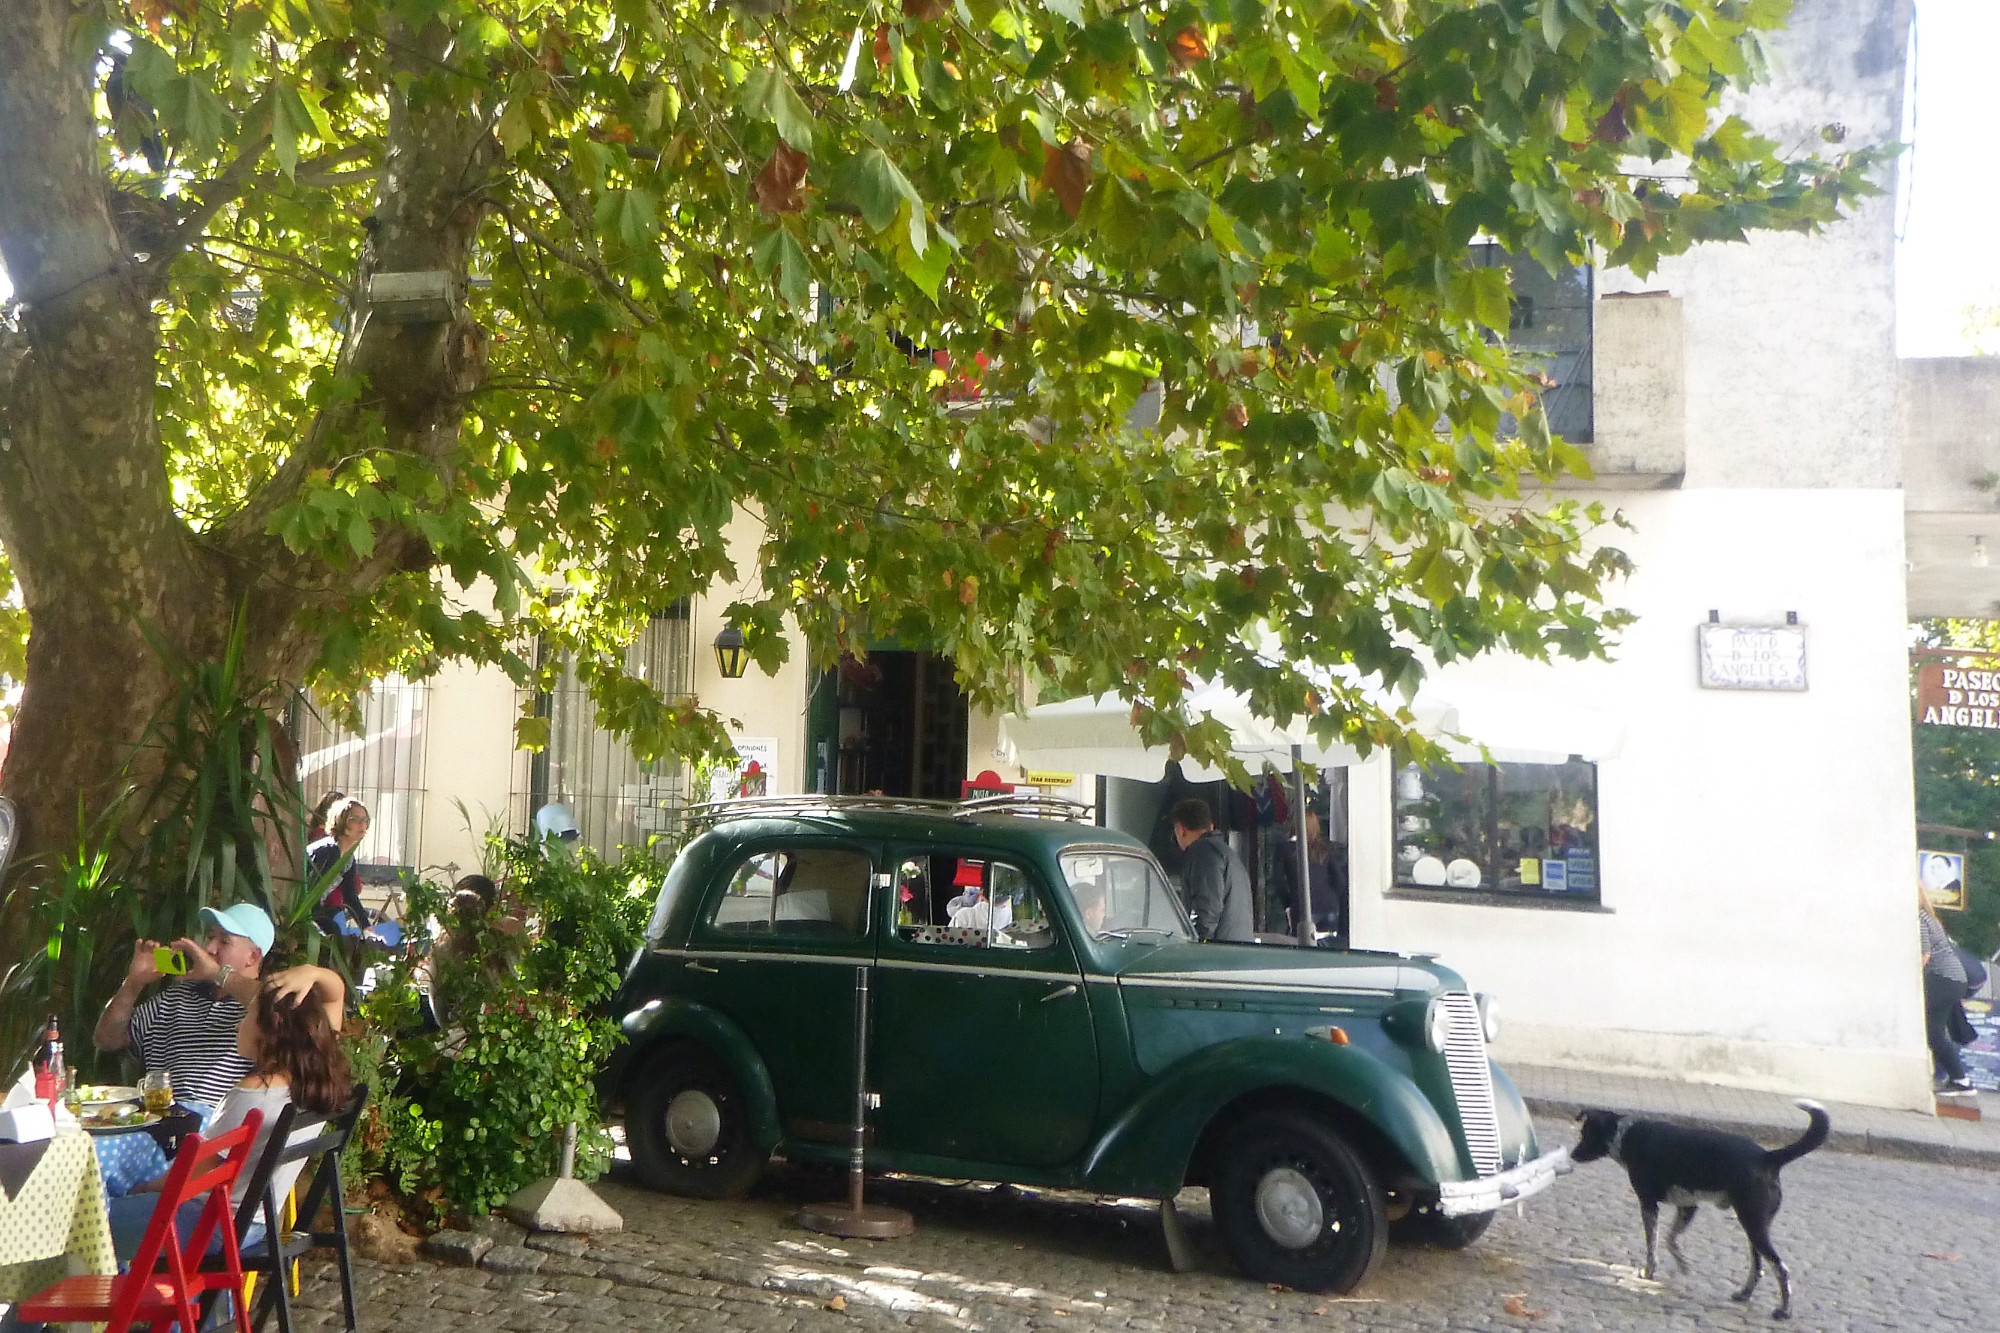 Old car outside cafe